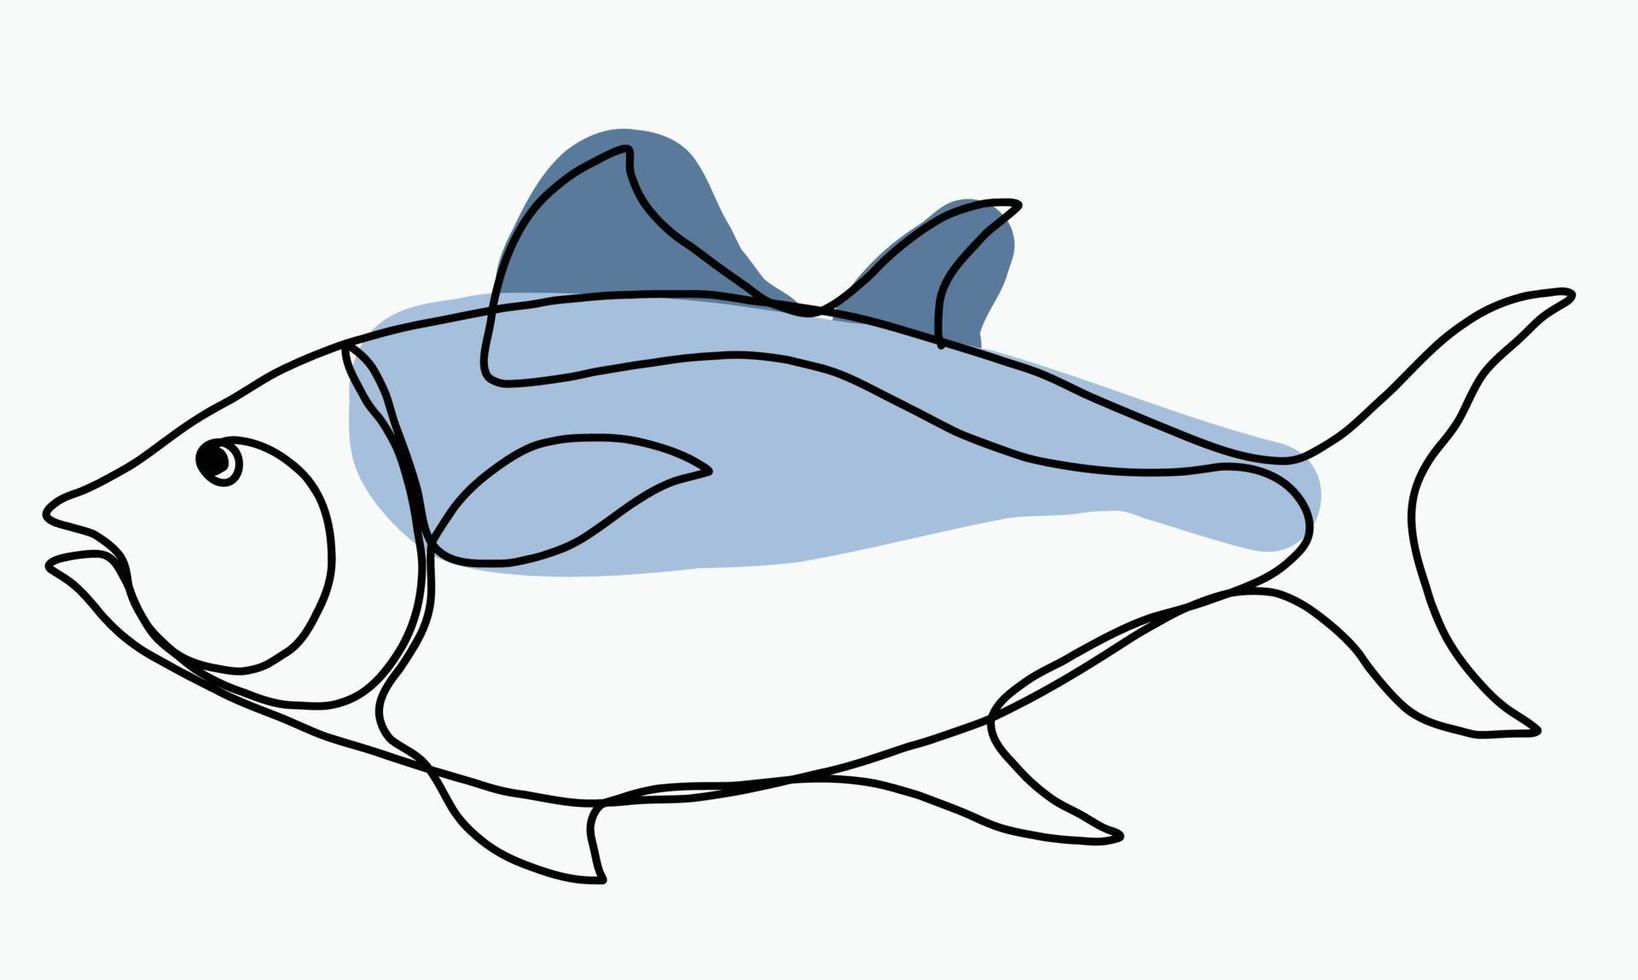 doodle croquis à main levée dessin continu de poisson. vecteur